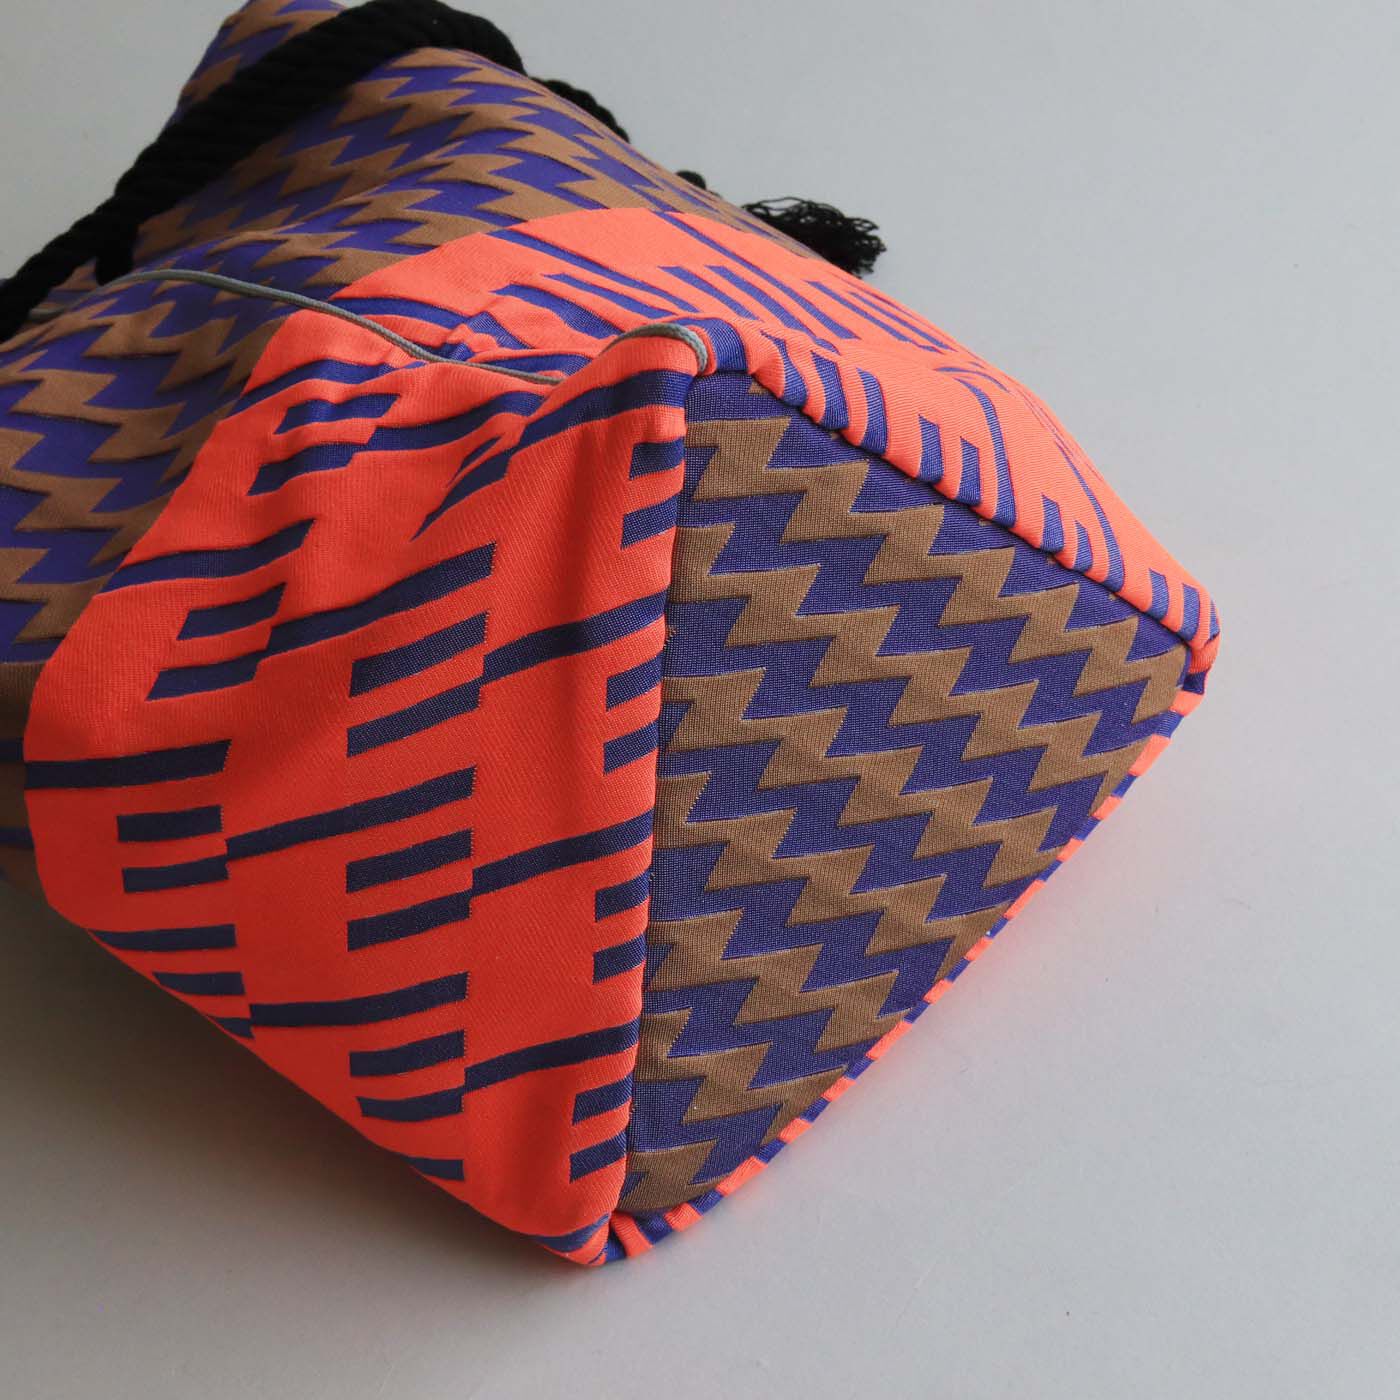 ＆Stories|テキスタイルデザイナーと作った 播州織のダズリングバッグ〈サンセット〉|底が三角形になったフォルムも個性的です。